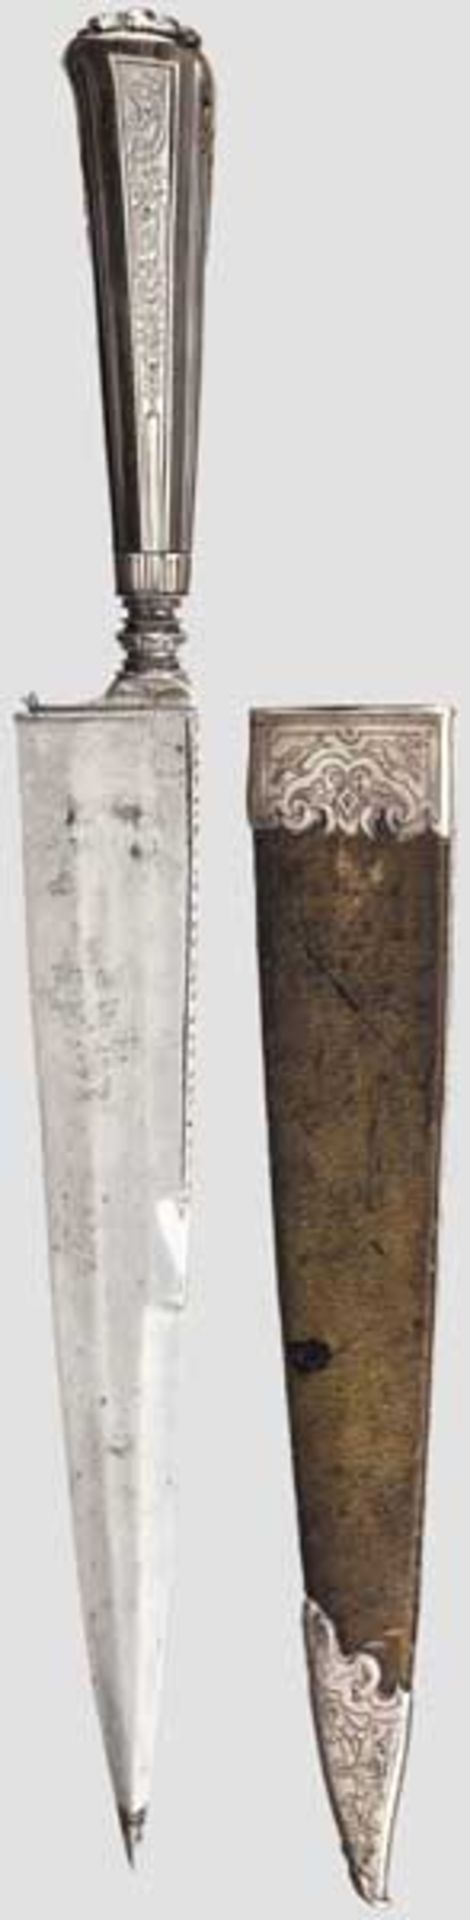 Jagdliches Luxusmesser mit Steinbockhorngriff, süddeutsch um 1740   Kräftige Rückenklinge mit